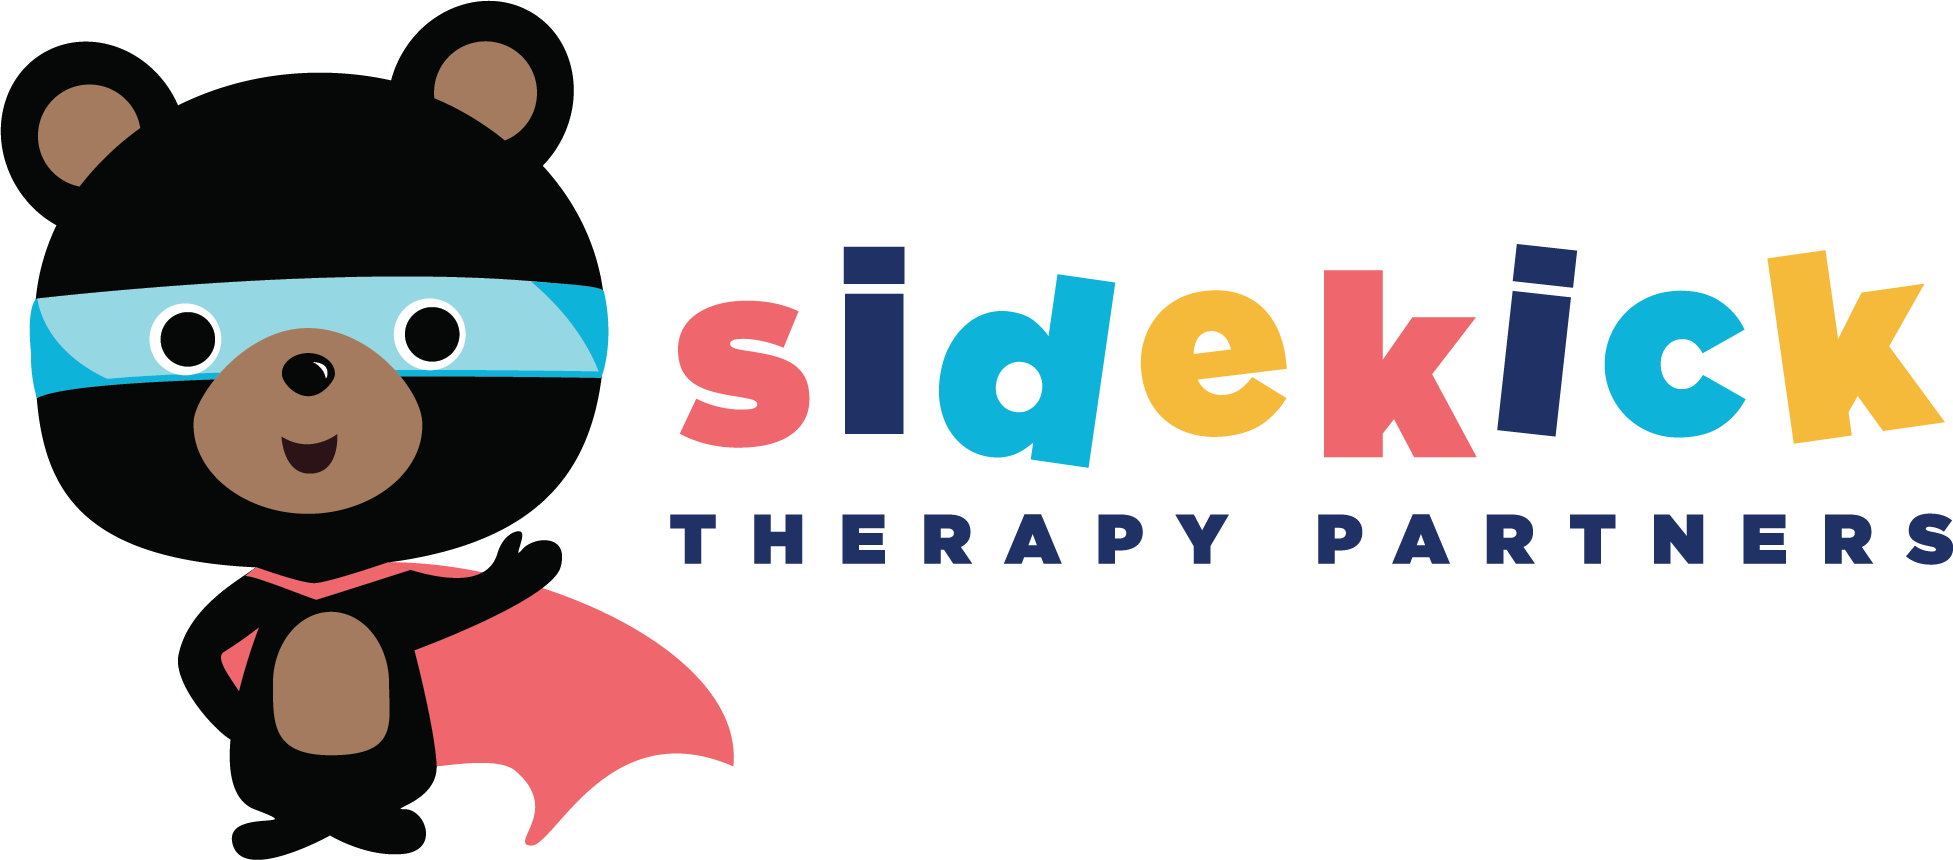 Sidekick Therapy Partners logo